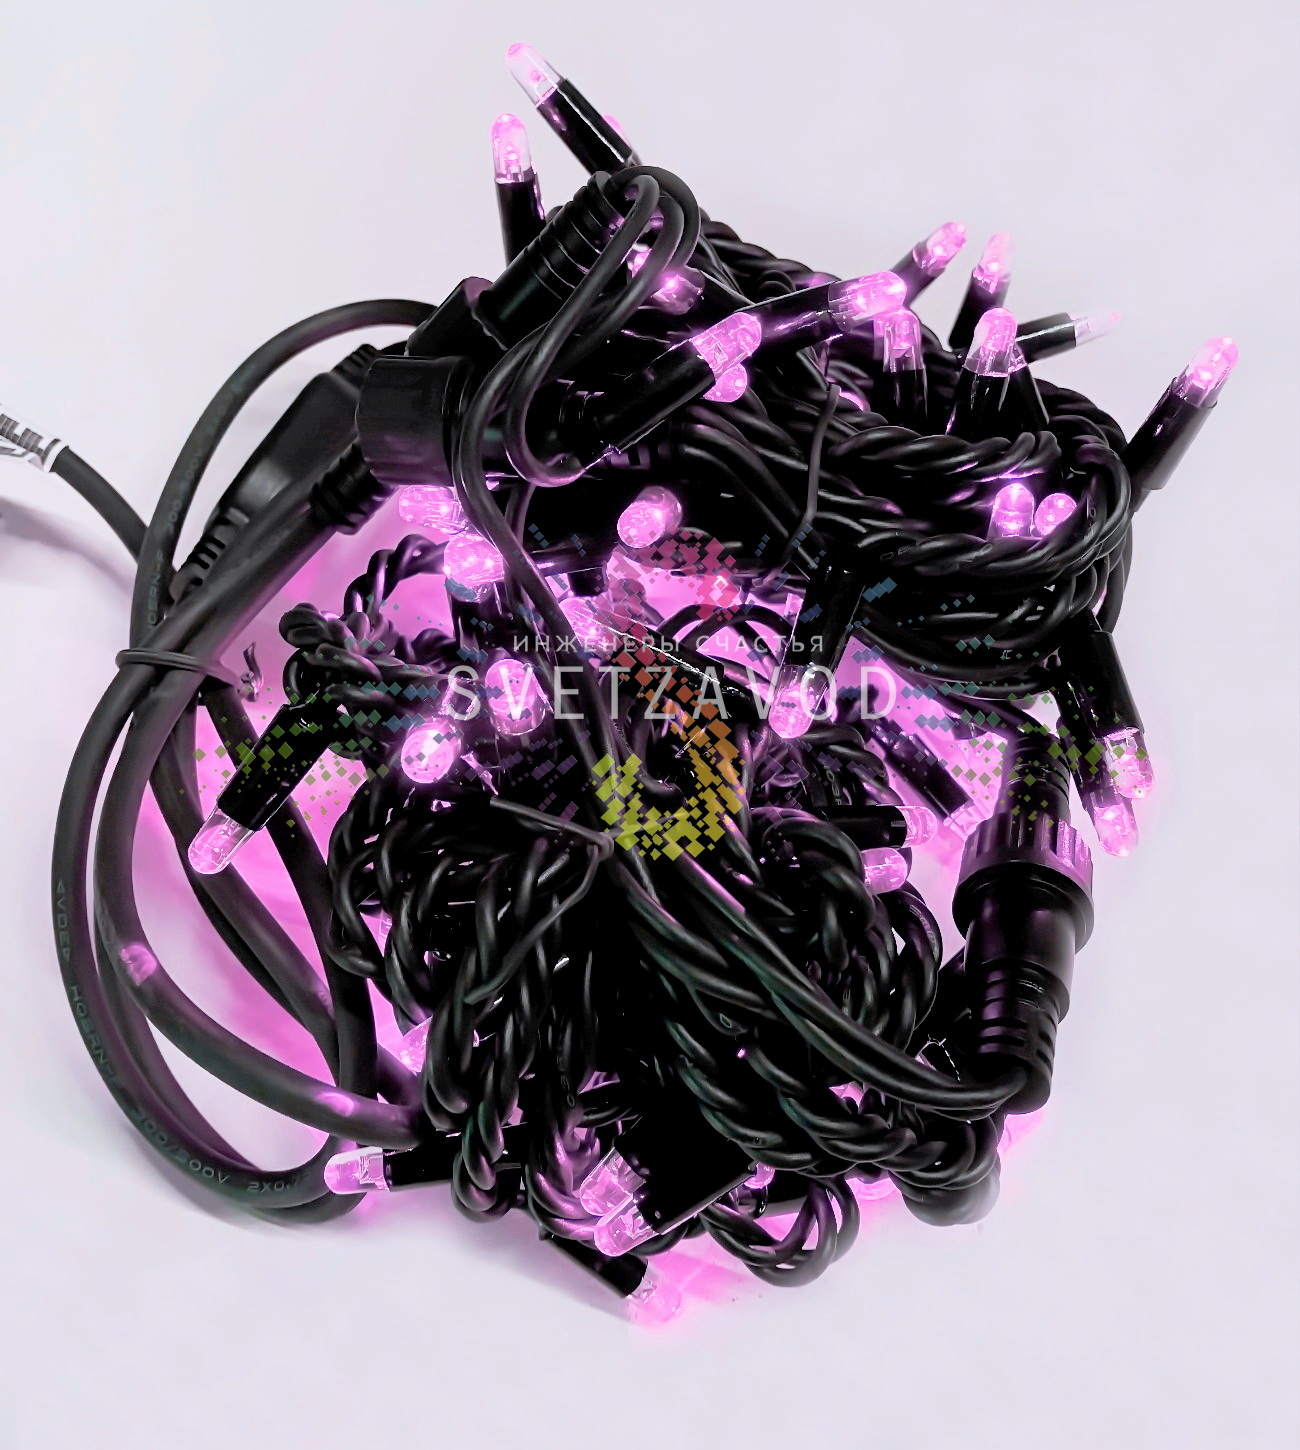 Гирлянда-нить Стринг Лайт, 220В, мерцающая, розовая, 10м, черный каучук, IP65, с шнуром